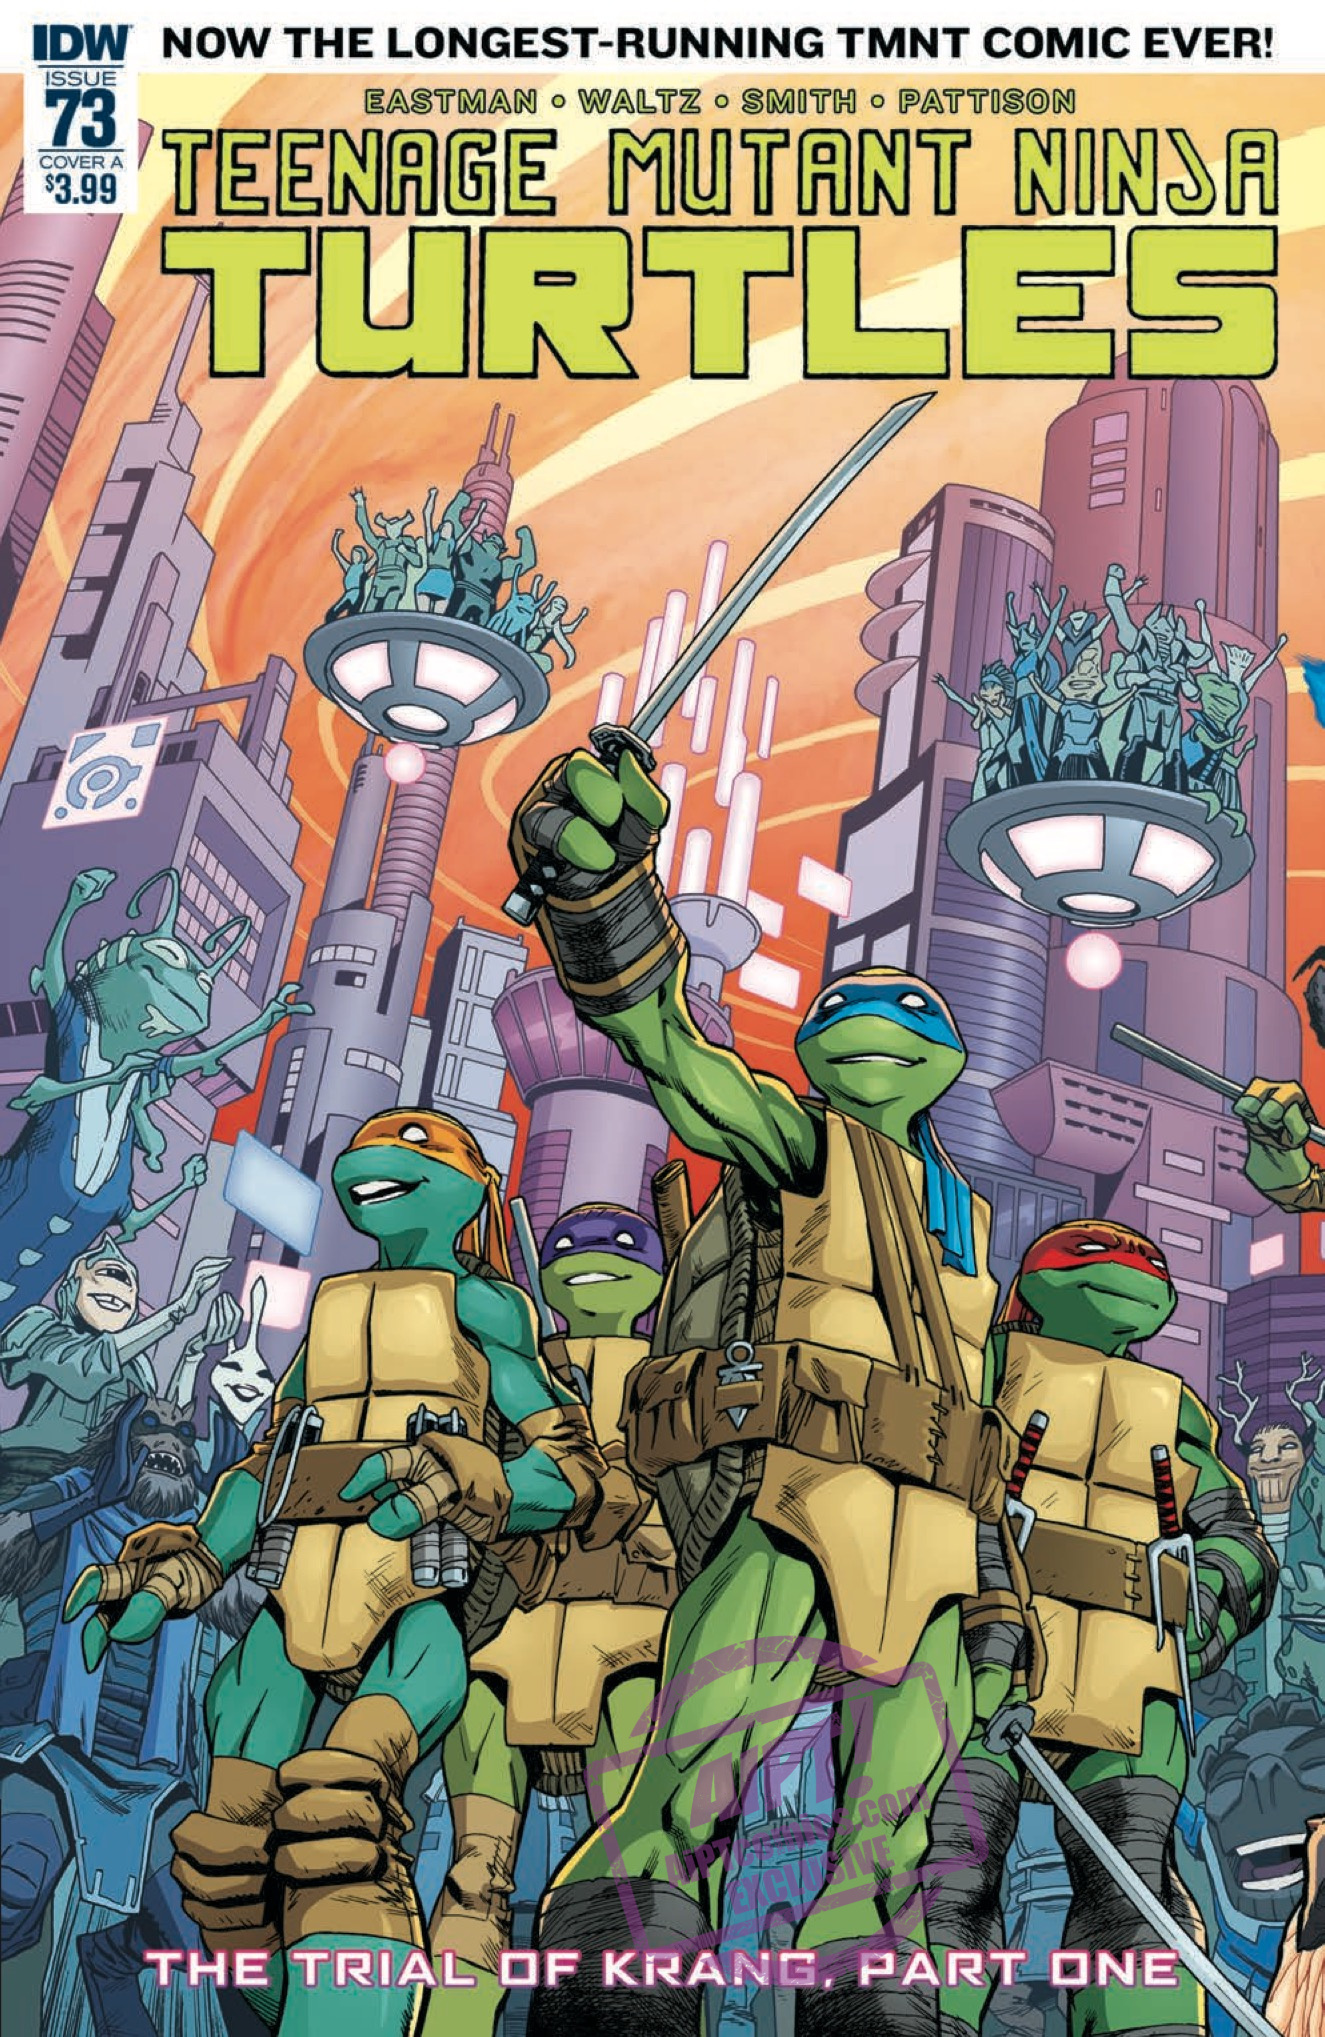 [EXCLUSIVE] IDW Preview: Teenage Mutant Ninja Turtles #73